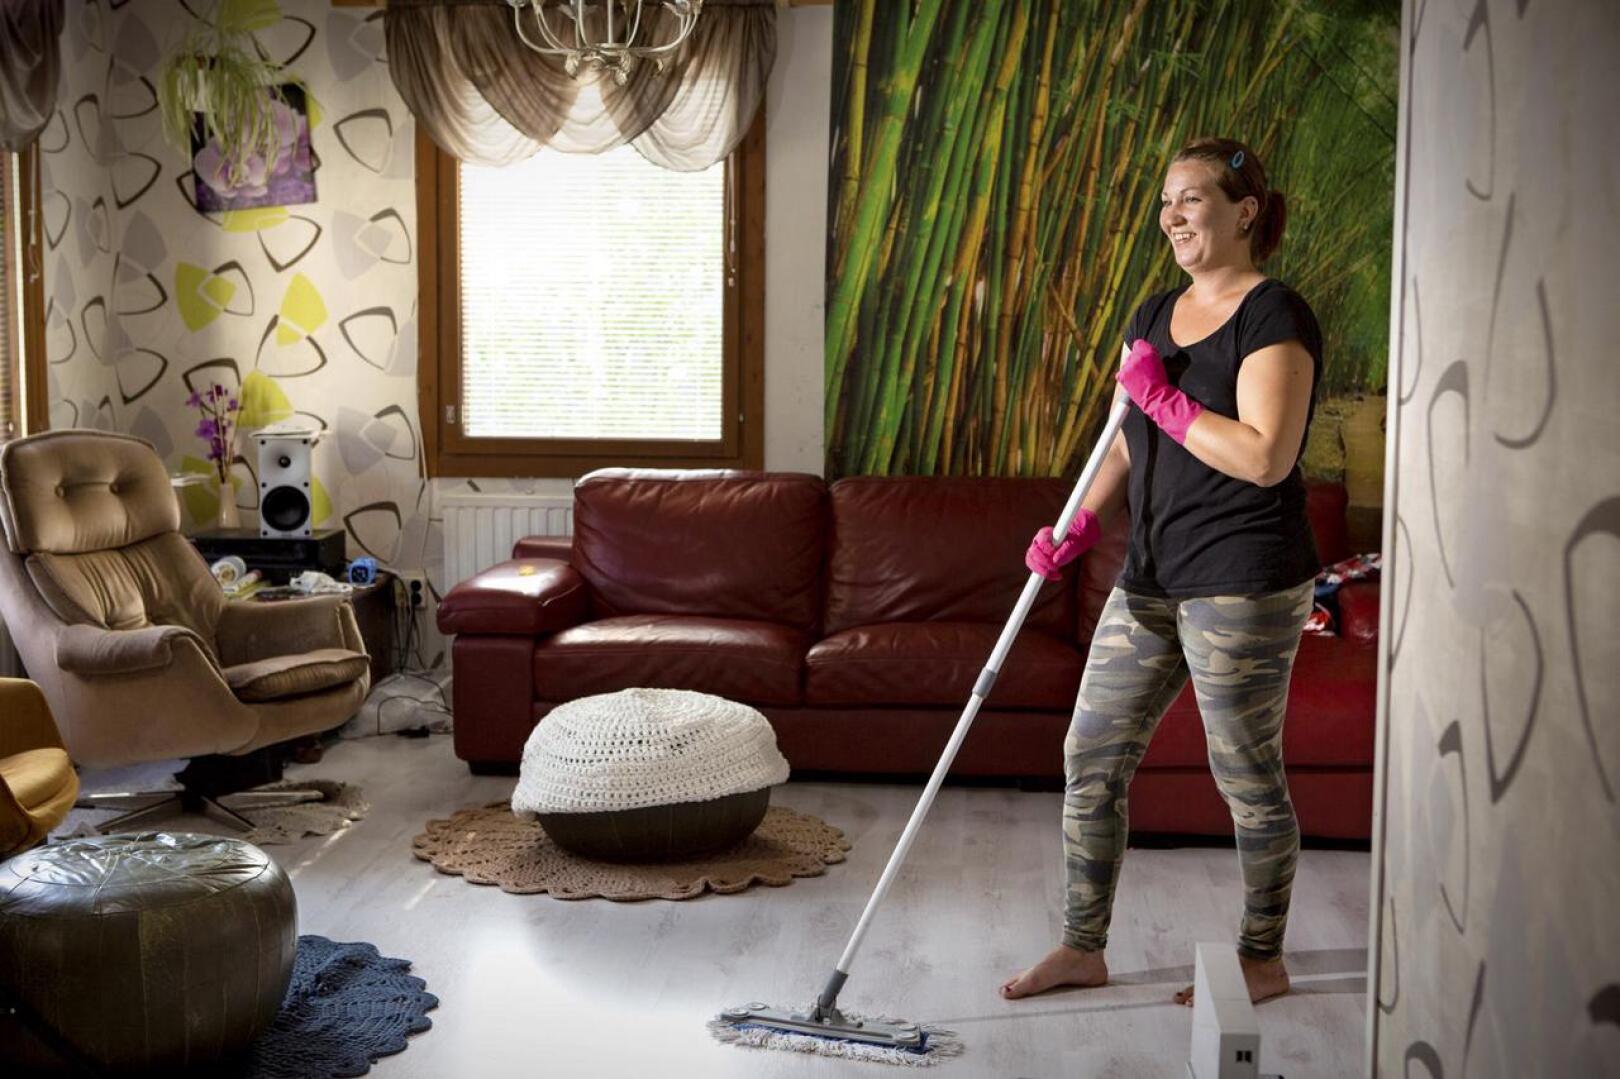 Yhä useammassa kodissa käy siivooja joko auttamassa isomman projektin kanssa tai säännöllisesti siivoamassa koko kodin. - Minun suurin asiakasryhmä löytyy nuorista lapsiperheistä, kertoo siivousalan yrittäjä Riina Liimatainen.